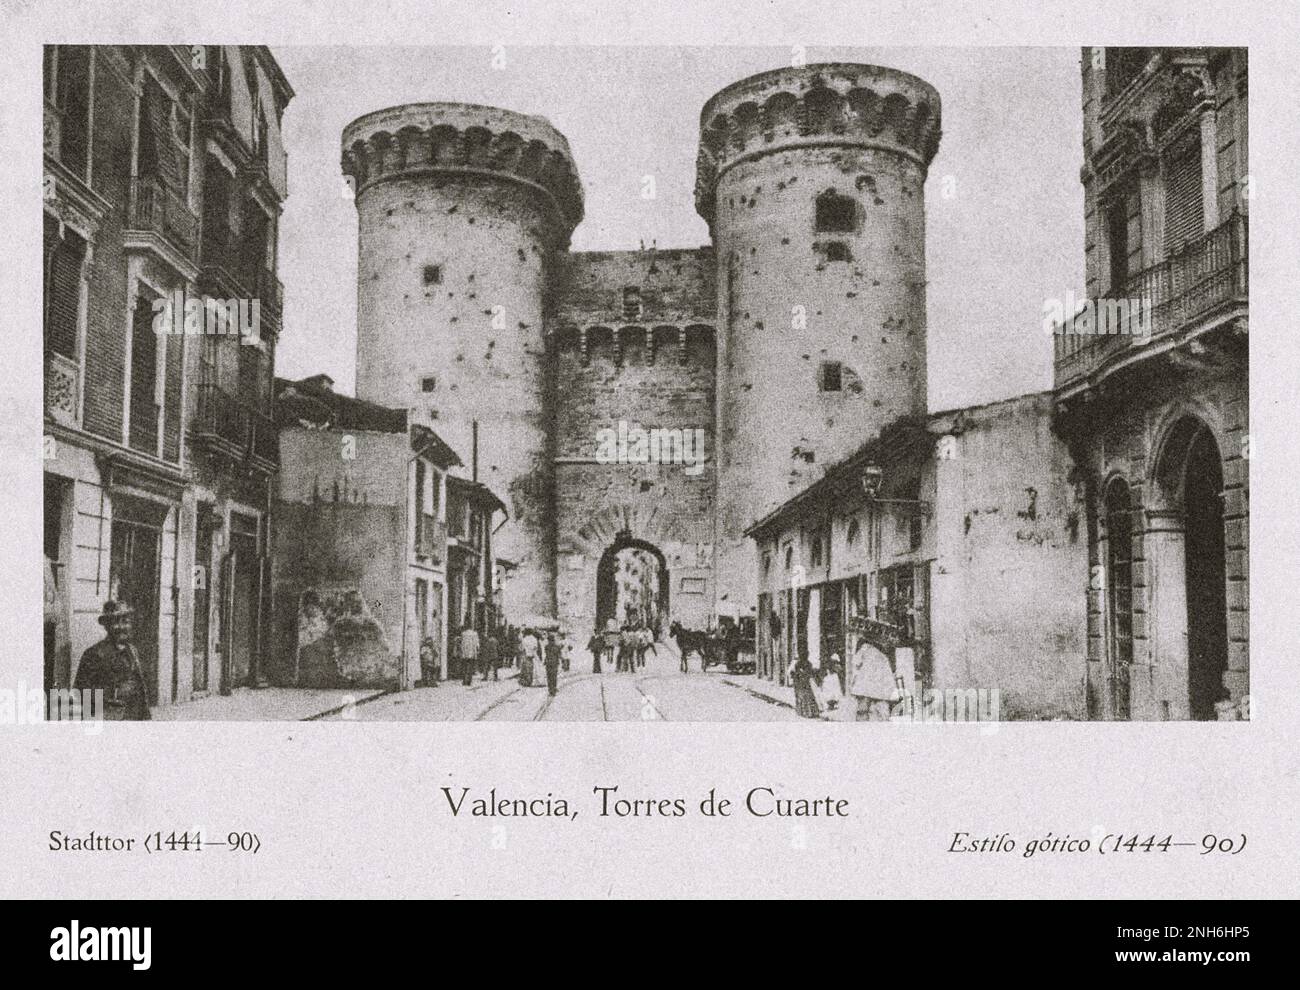 Architecture de la vieille Espagne. Photo ancienne de Torres de Cuarte (Tour Quart) (1444-1490). Valence, Espagne Banque D'Images